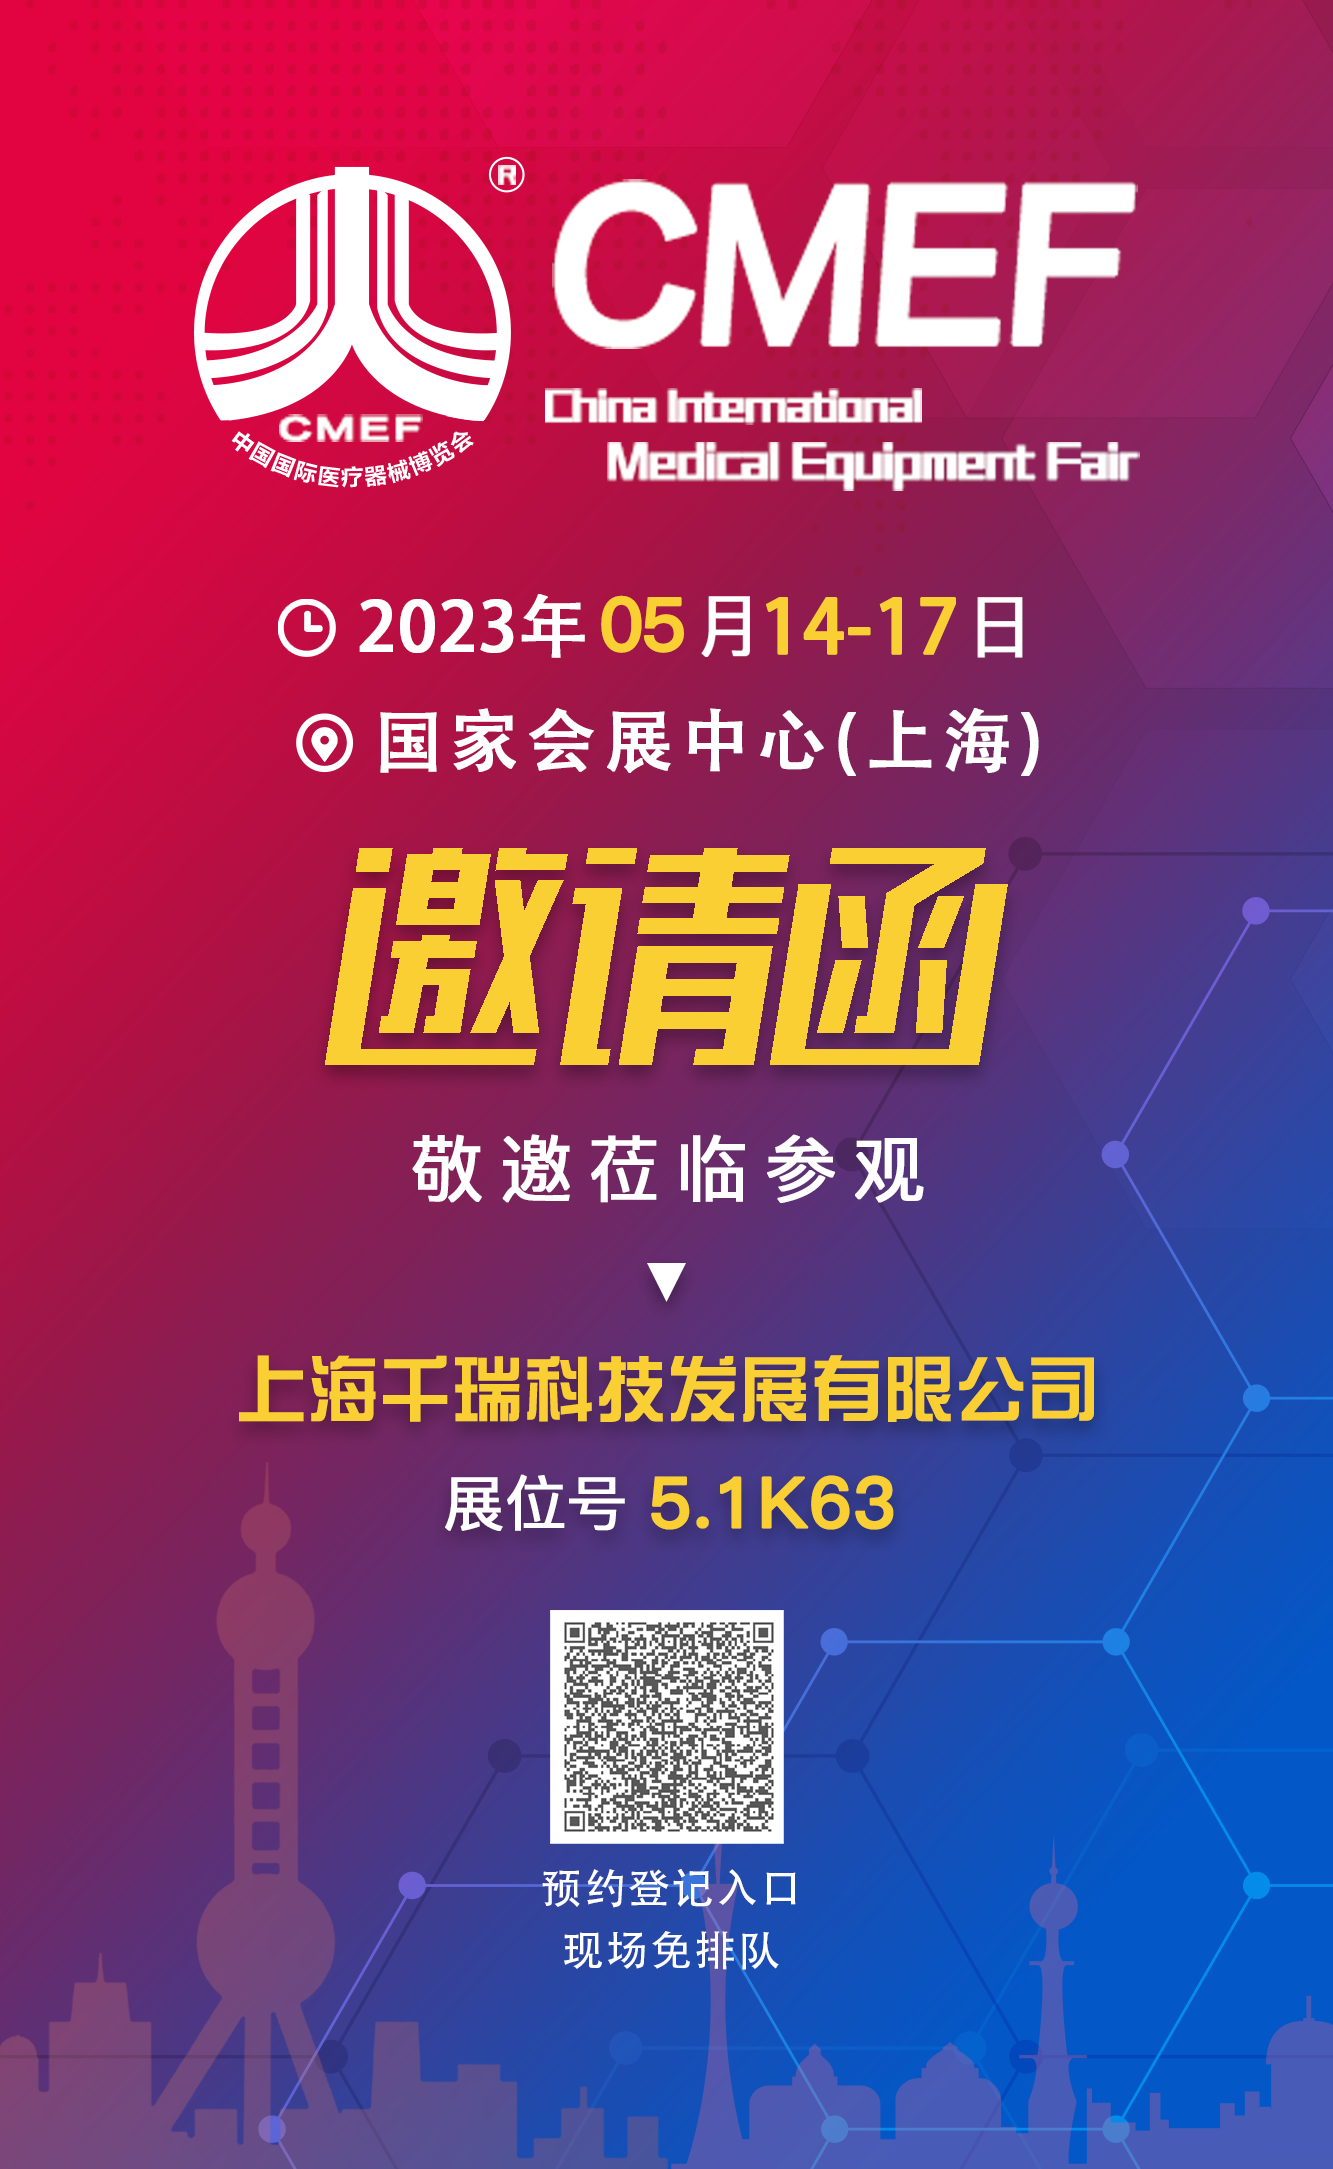 上海千瑞科技发展有限公司2023年  CMEF  医疗器械博览会